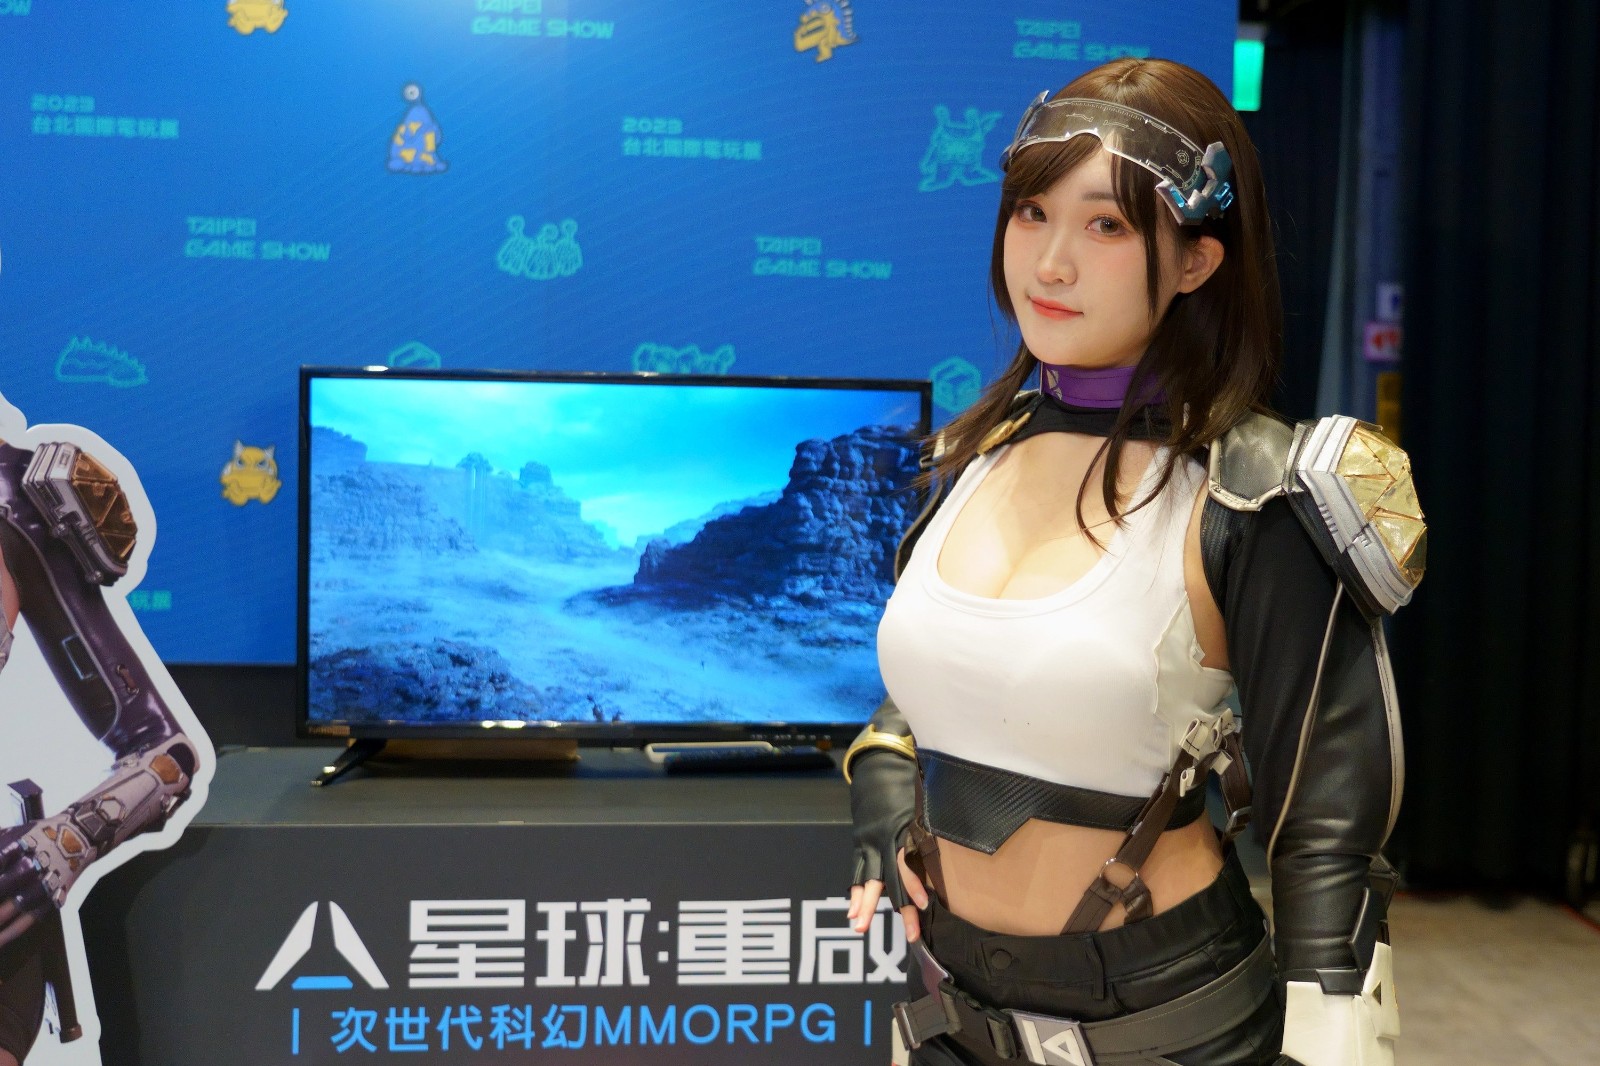 中国台北国际电玩展2月2日开始 任天堂首度参加 二次世界 第8张